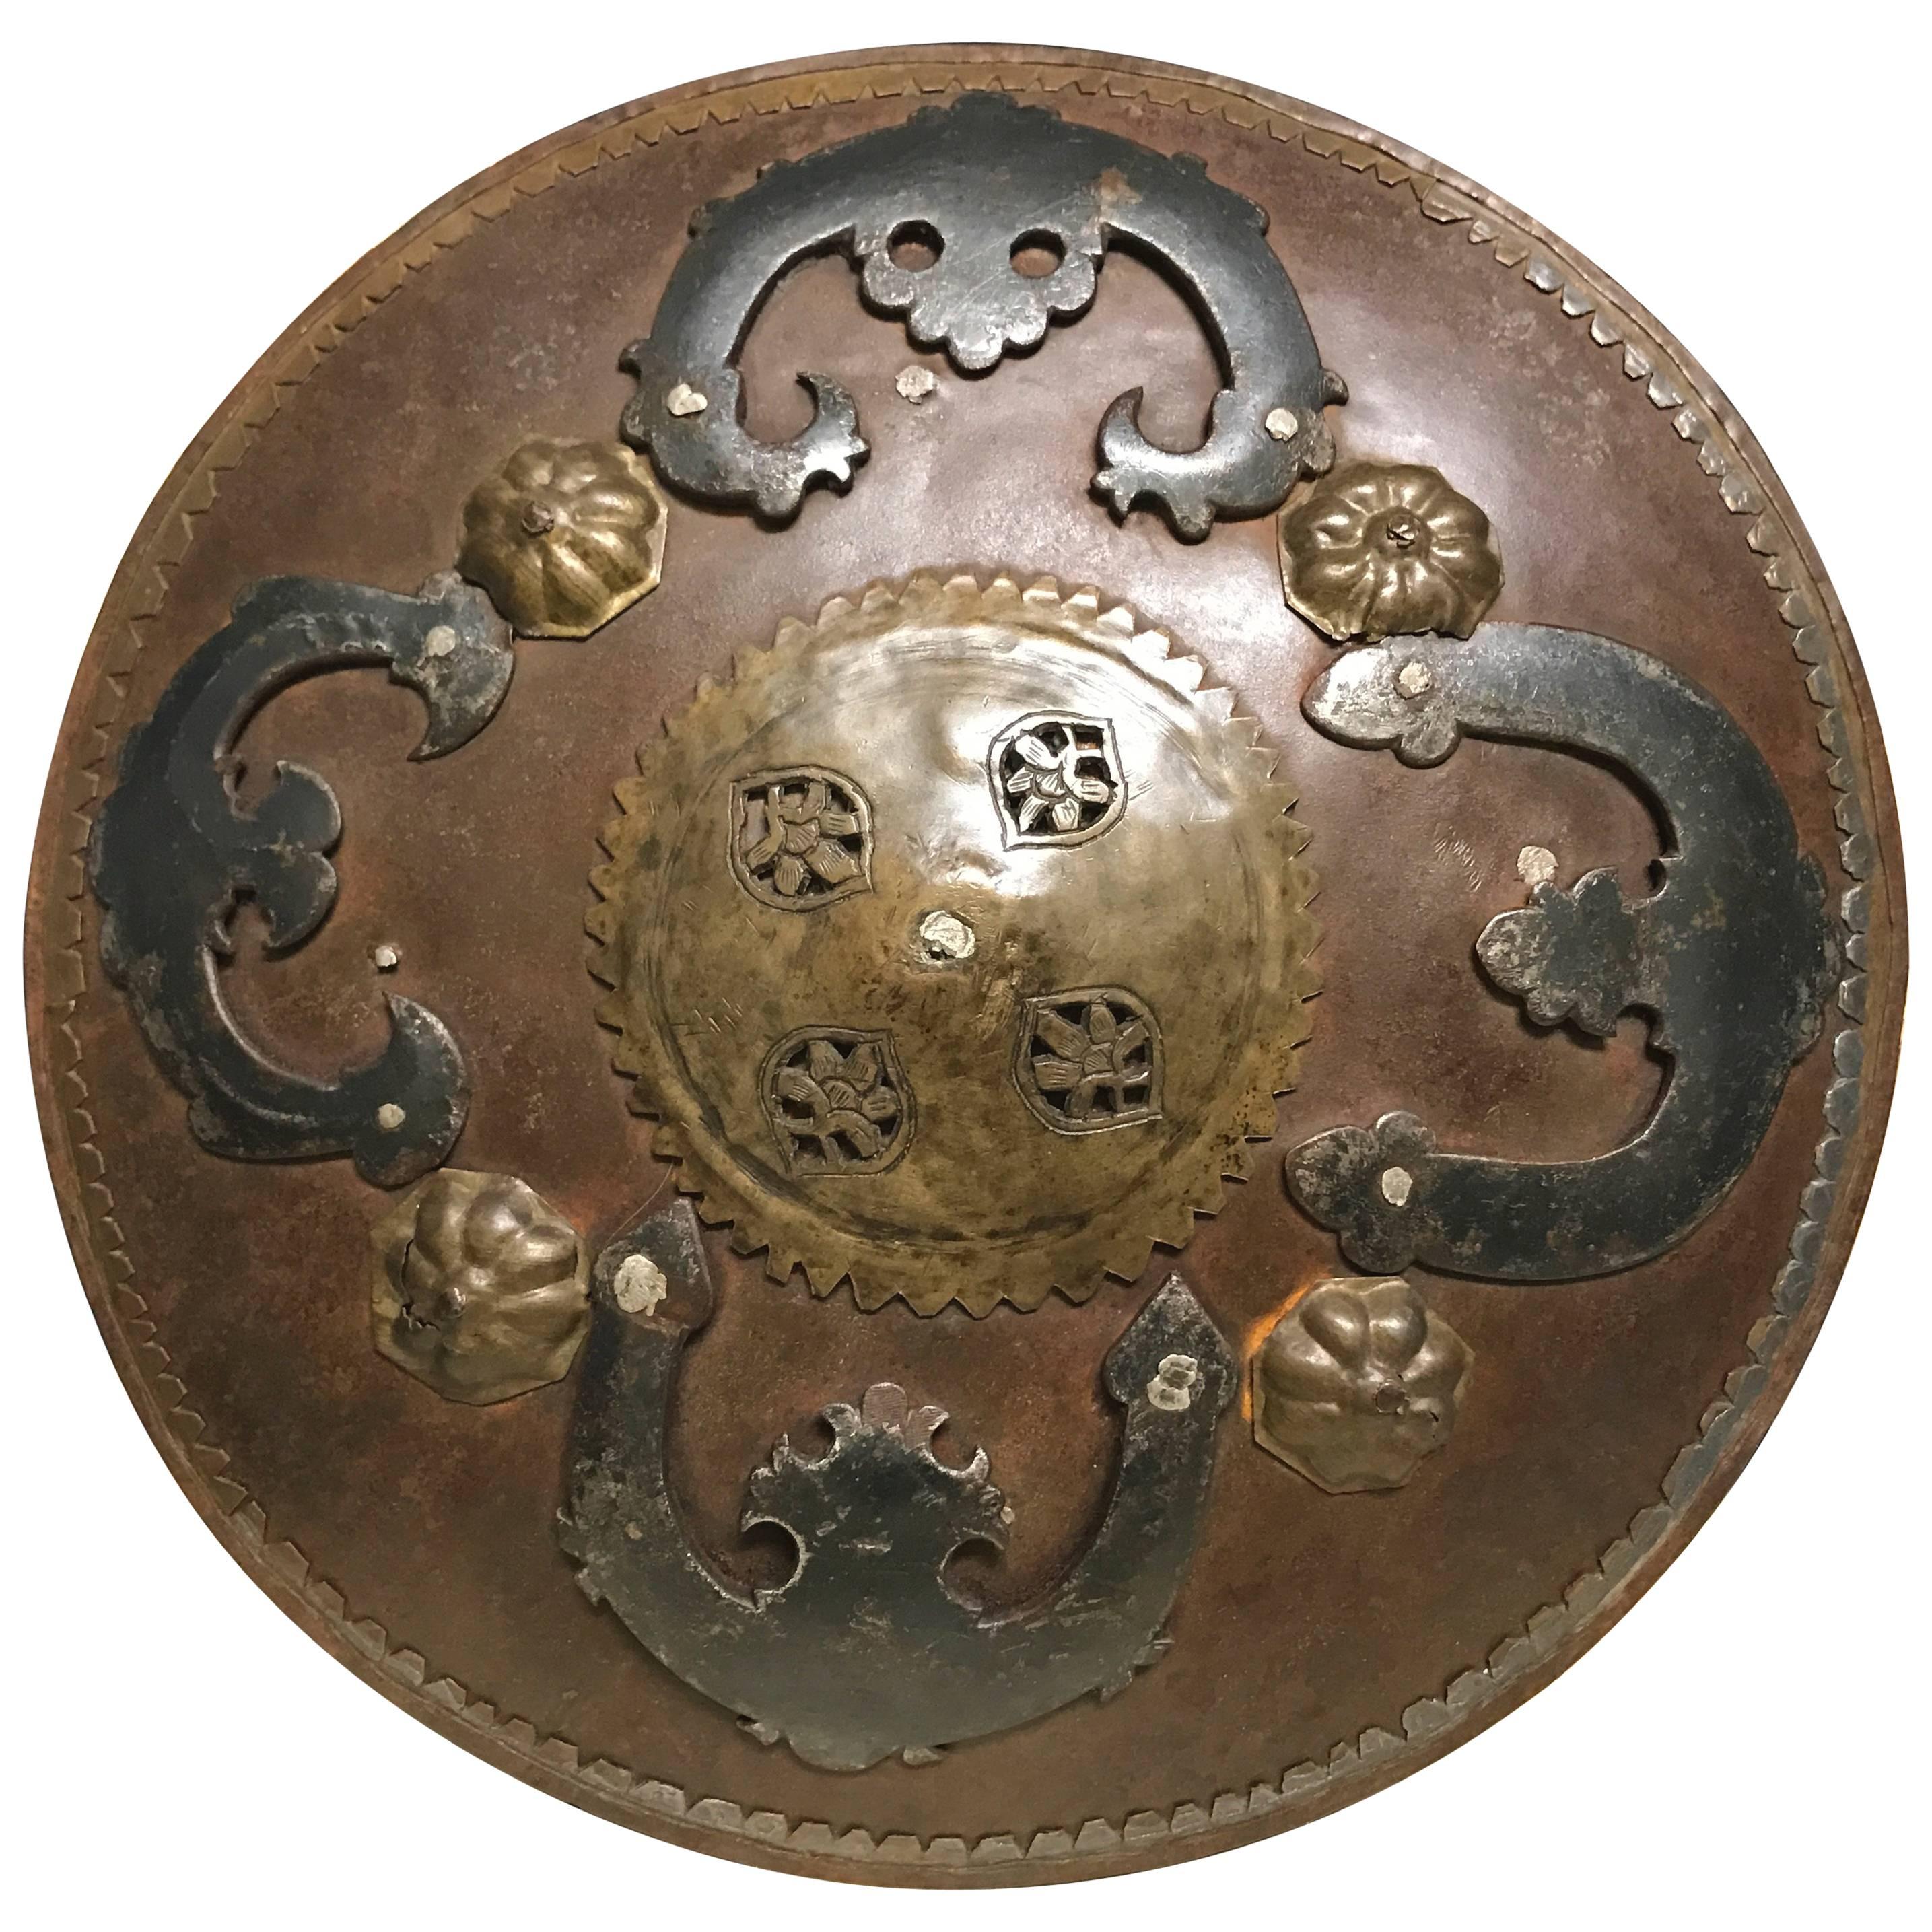 19th Century Turkish Ottoman Miniature Iron and Brass Battle Shield